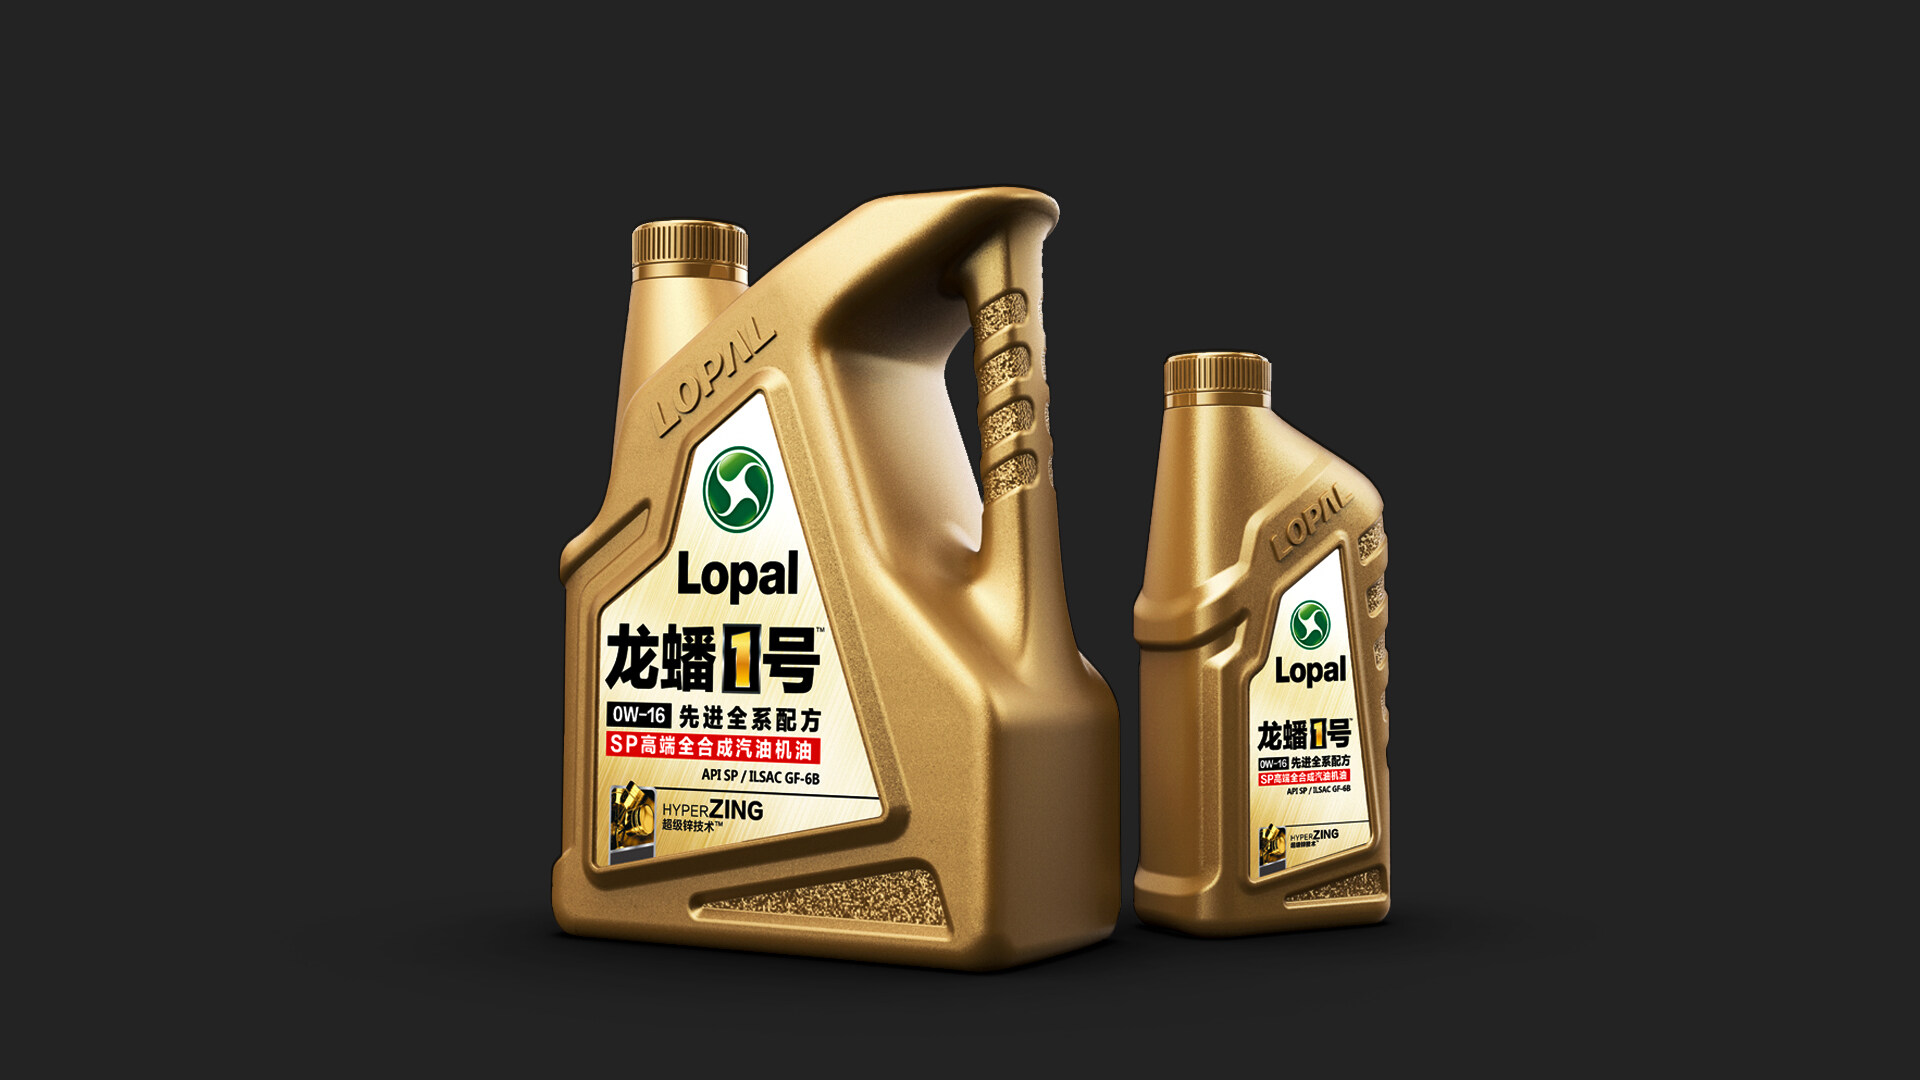 包装瓶型设计-龙蟠1号高端全合成润滑油/瓶型设计